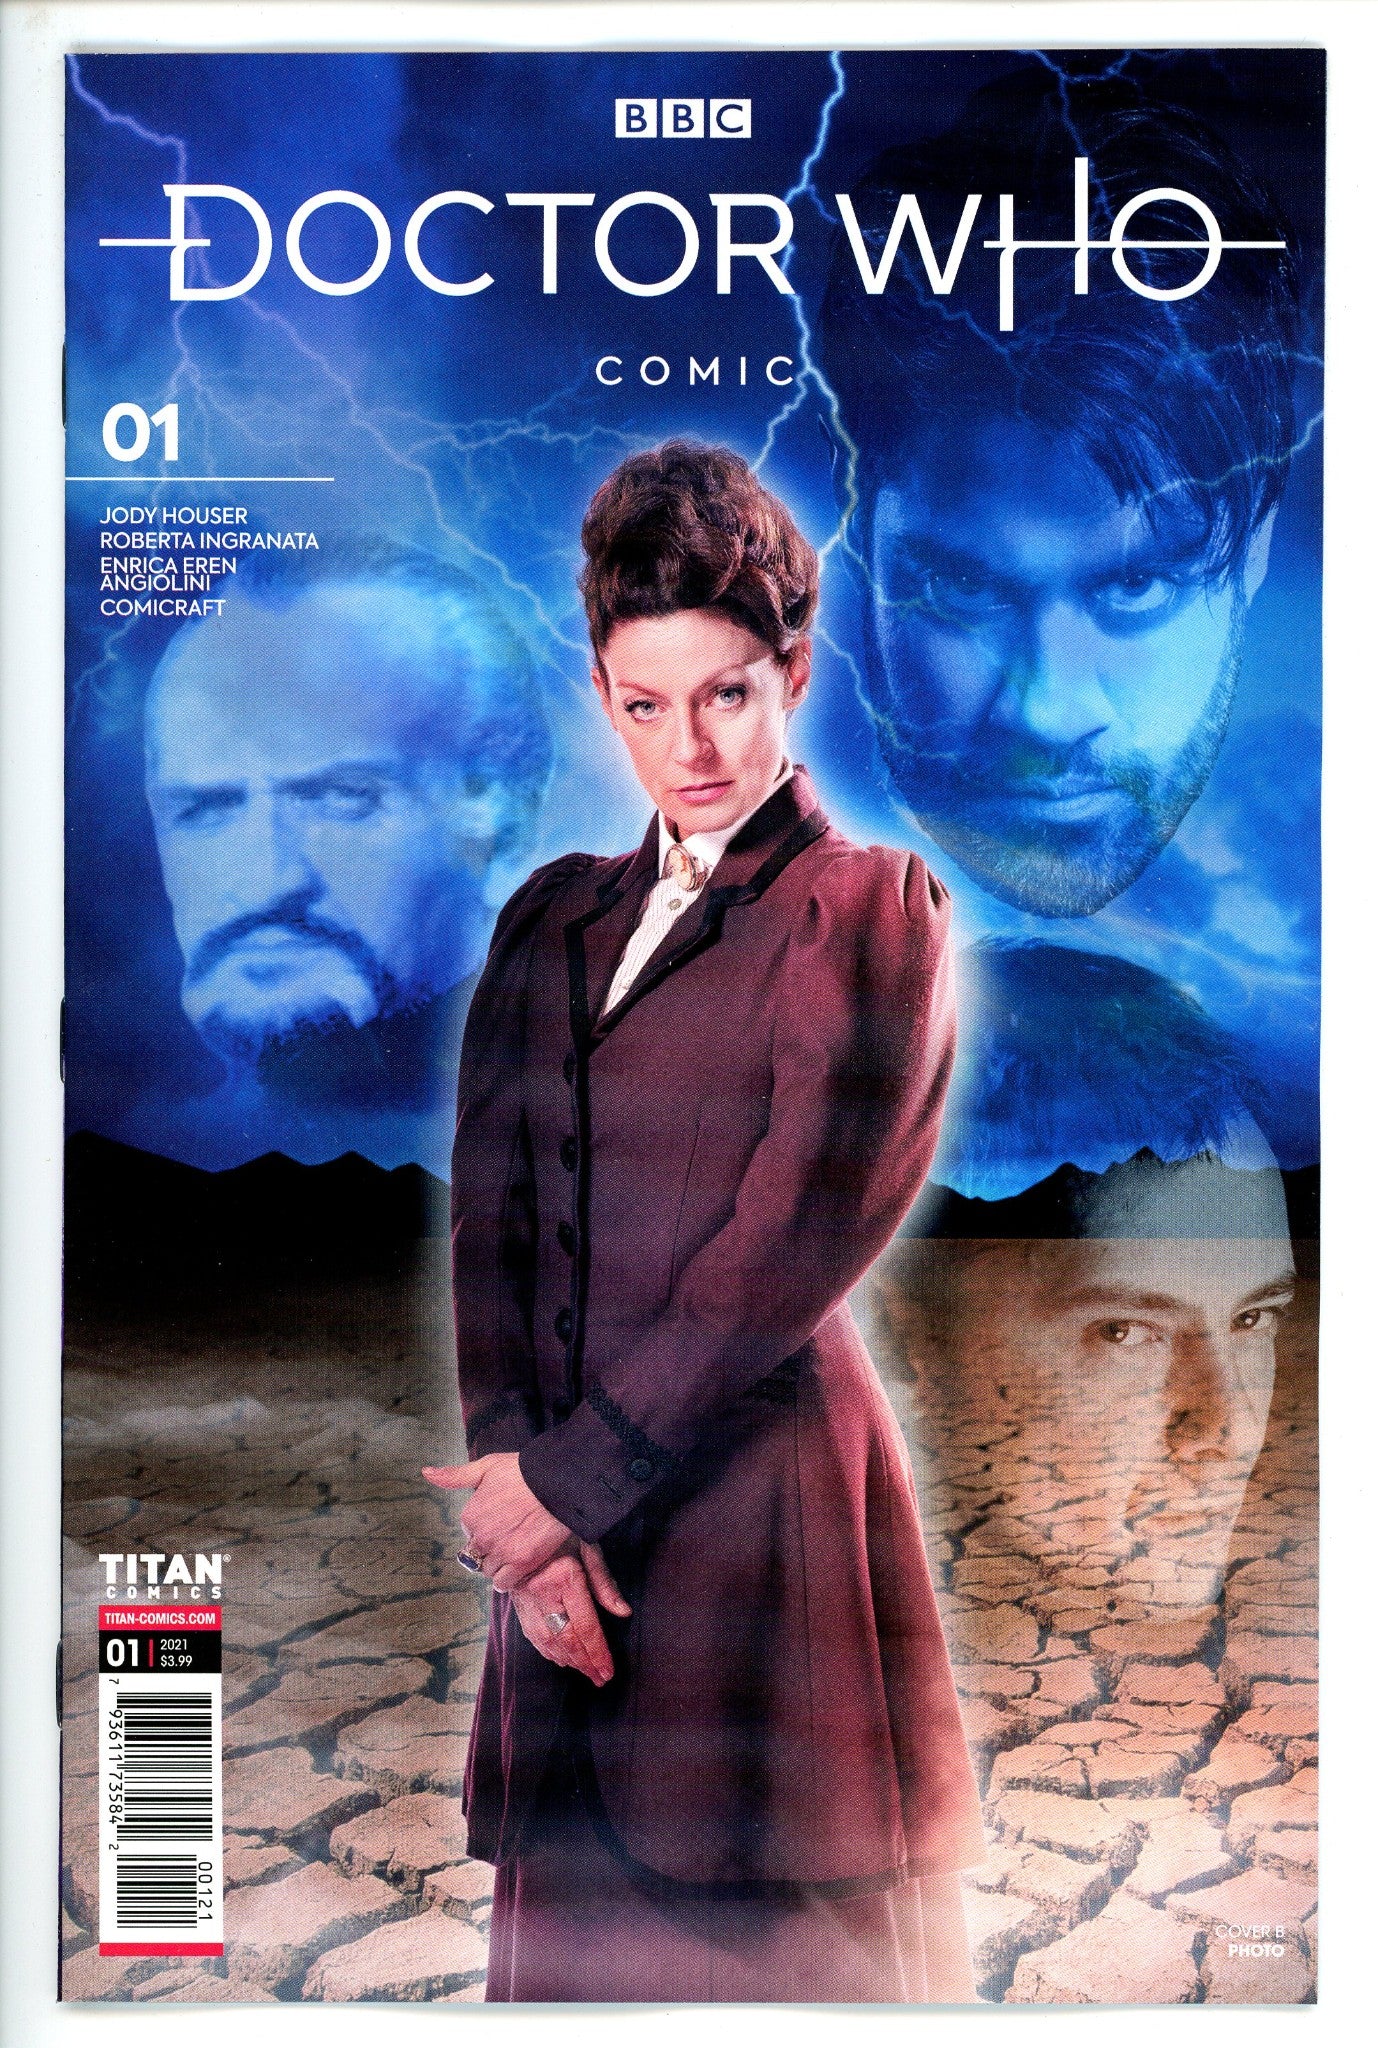 Doctor Who Missy 1 Variant-CaptCan Comics Inc-CaptCan Comics Inc